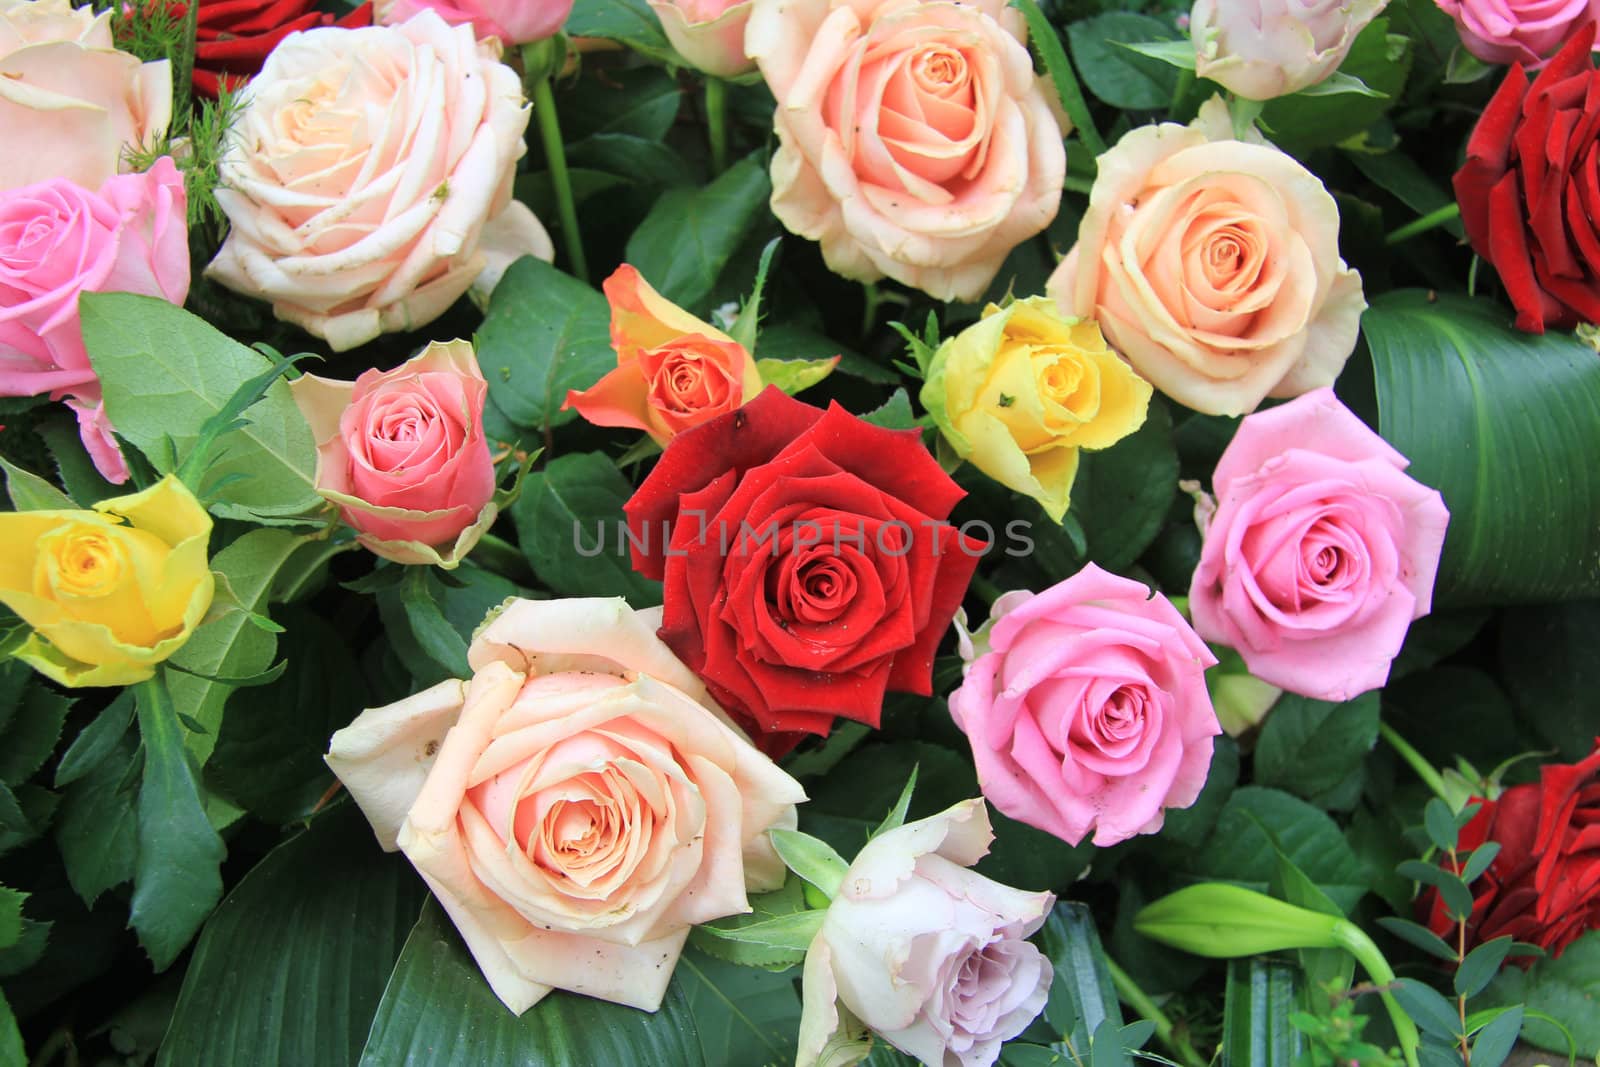 Multicolored rose bouquet by studioportosabbia